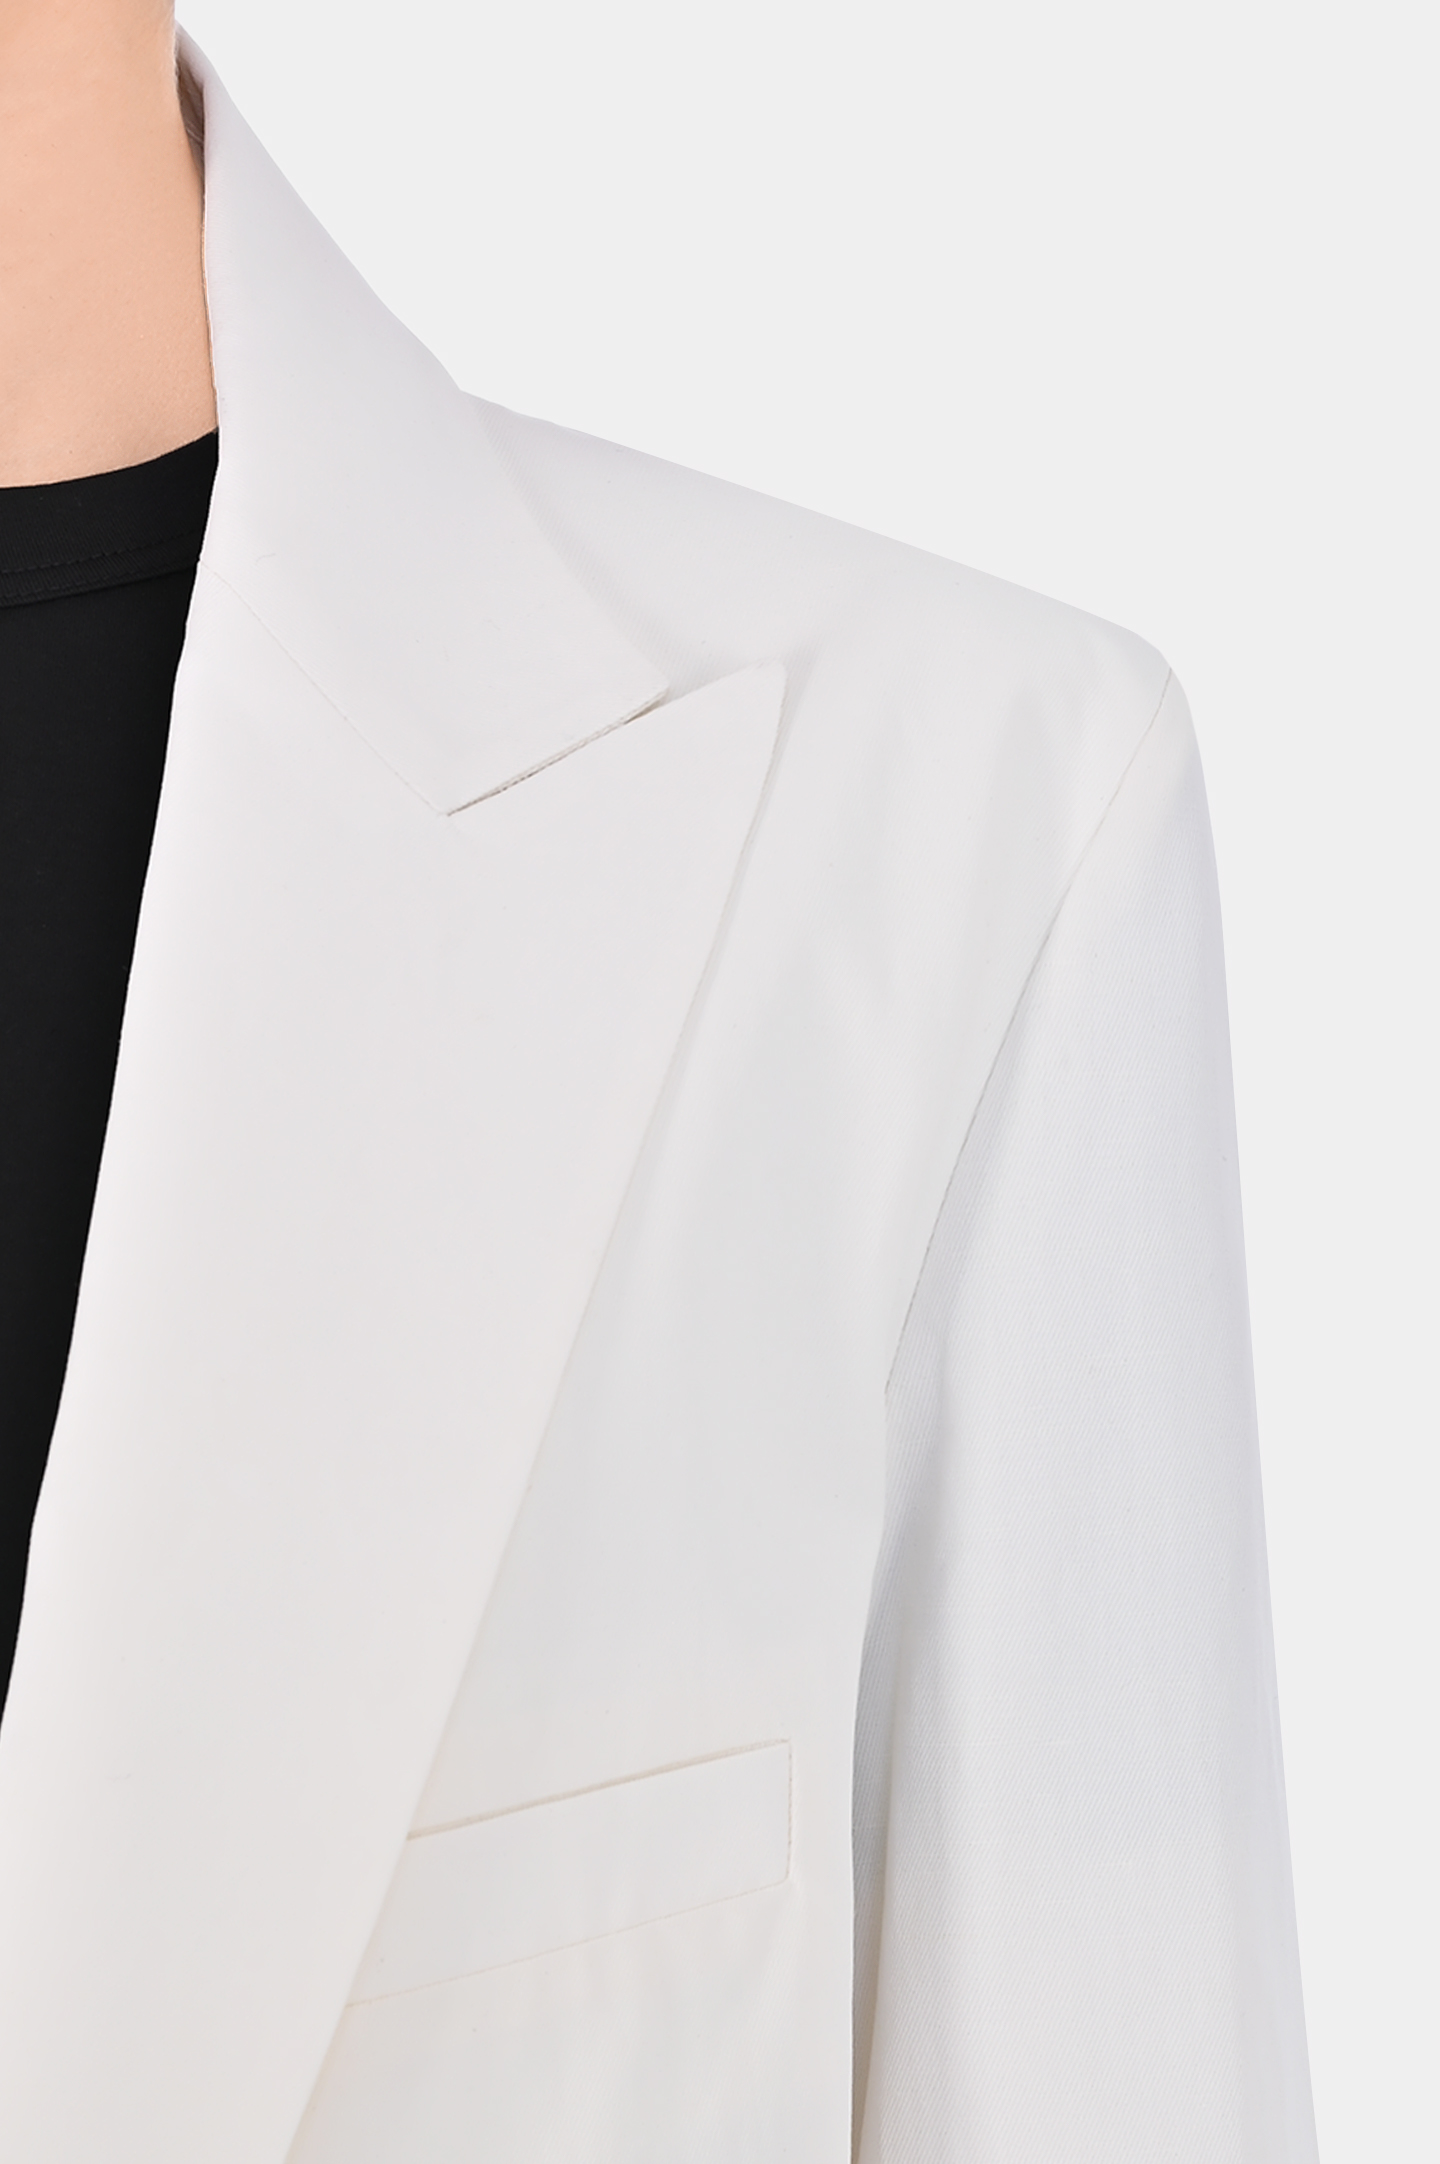 Жакет двубортный с карманами FABIANA FILIPPI GCD274F544 D672, цвет: Белый, Женский